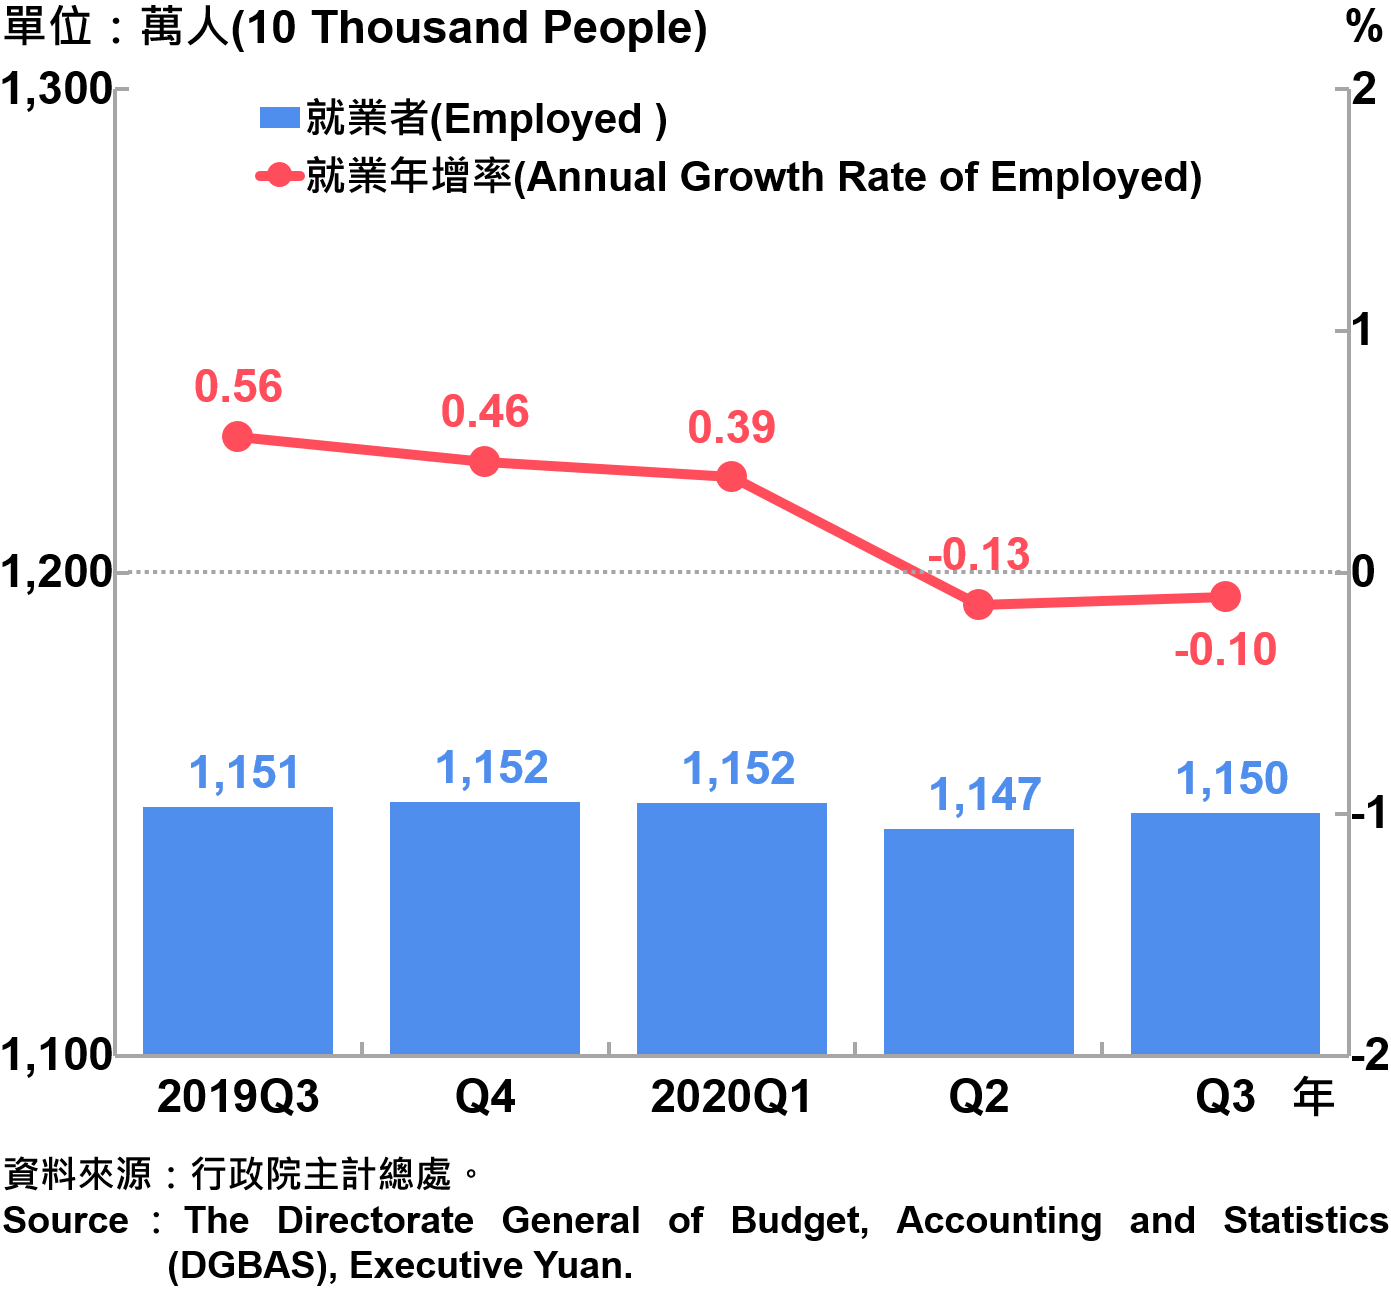 就業人數及就業成長率 Employed and Annual Growth Rate of Employed